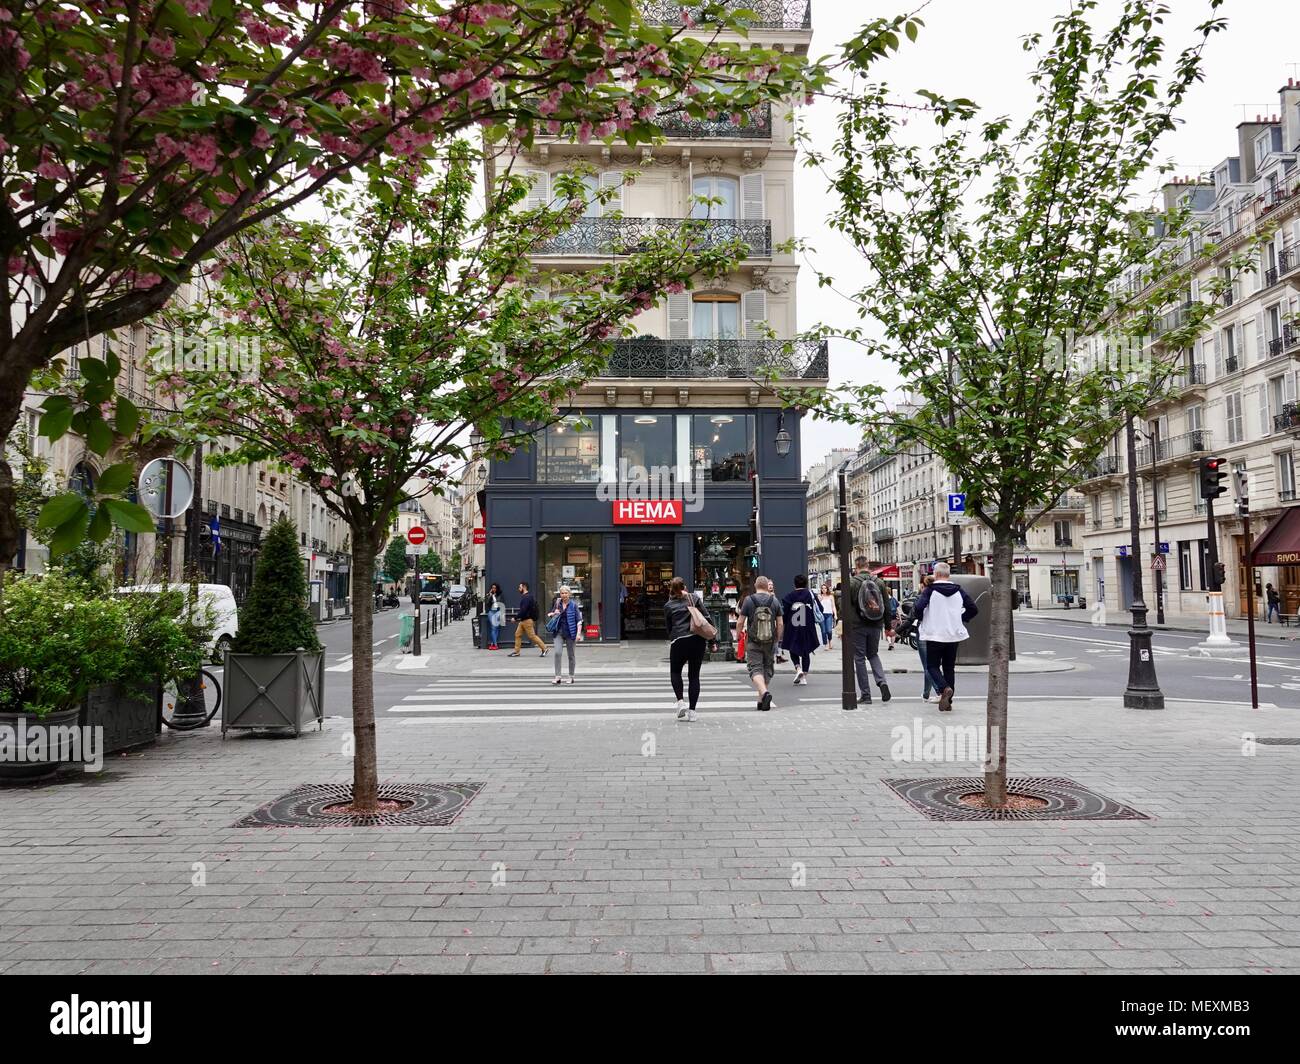 La primavera. Persone che passano da Hema, un olandese di sconto catena di vendita al dettaglio, in Saint Paul area di rue de Rivoli. Parigi, Francia. Foto Stock